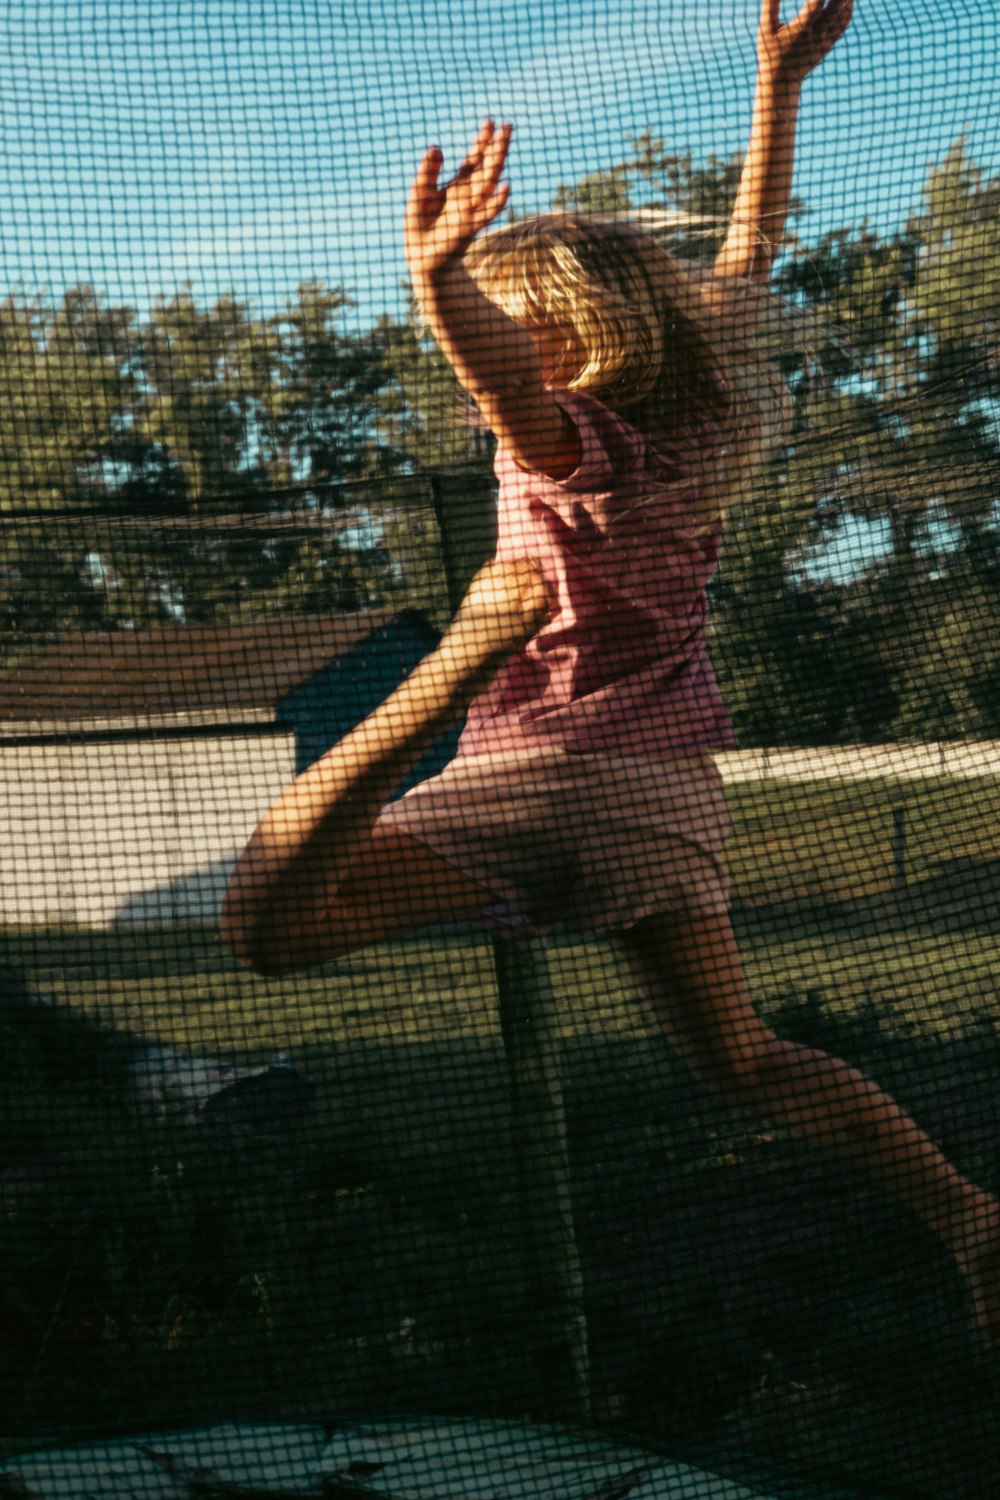 ein kleines Mädchen, das in die Luft springt, um eine Frisbee zu fangen